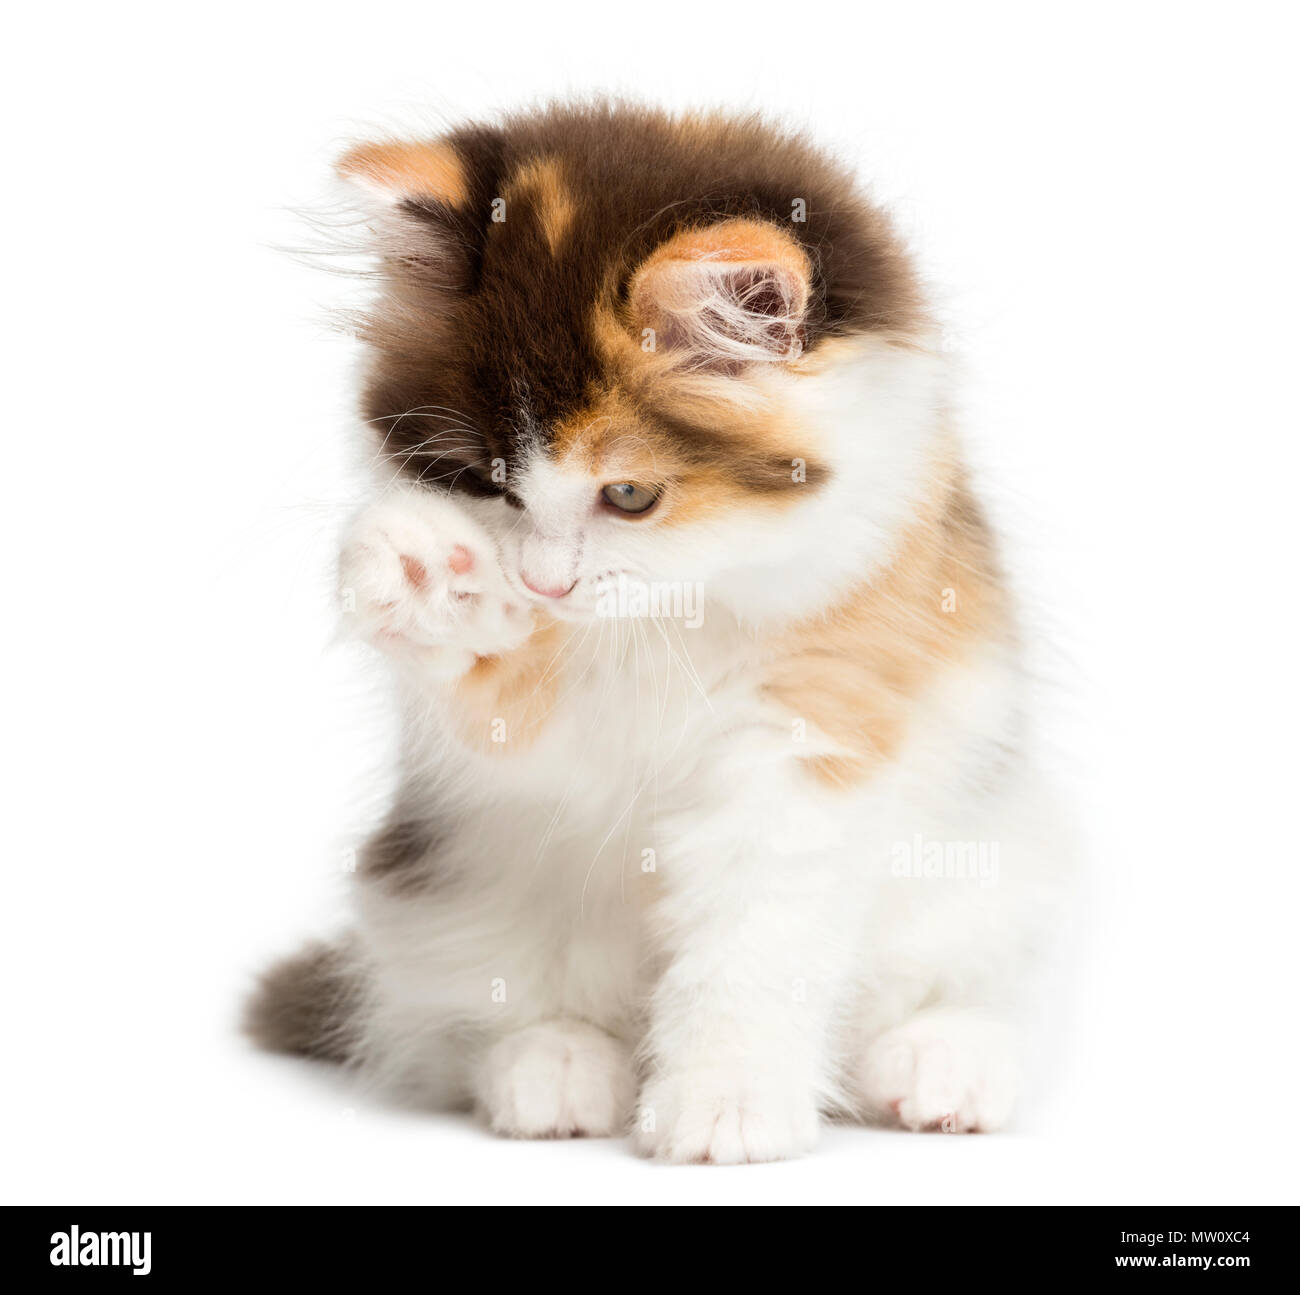 Recta Higland gatito sentado, tras un lavado, aislado en blanco Foto de stock